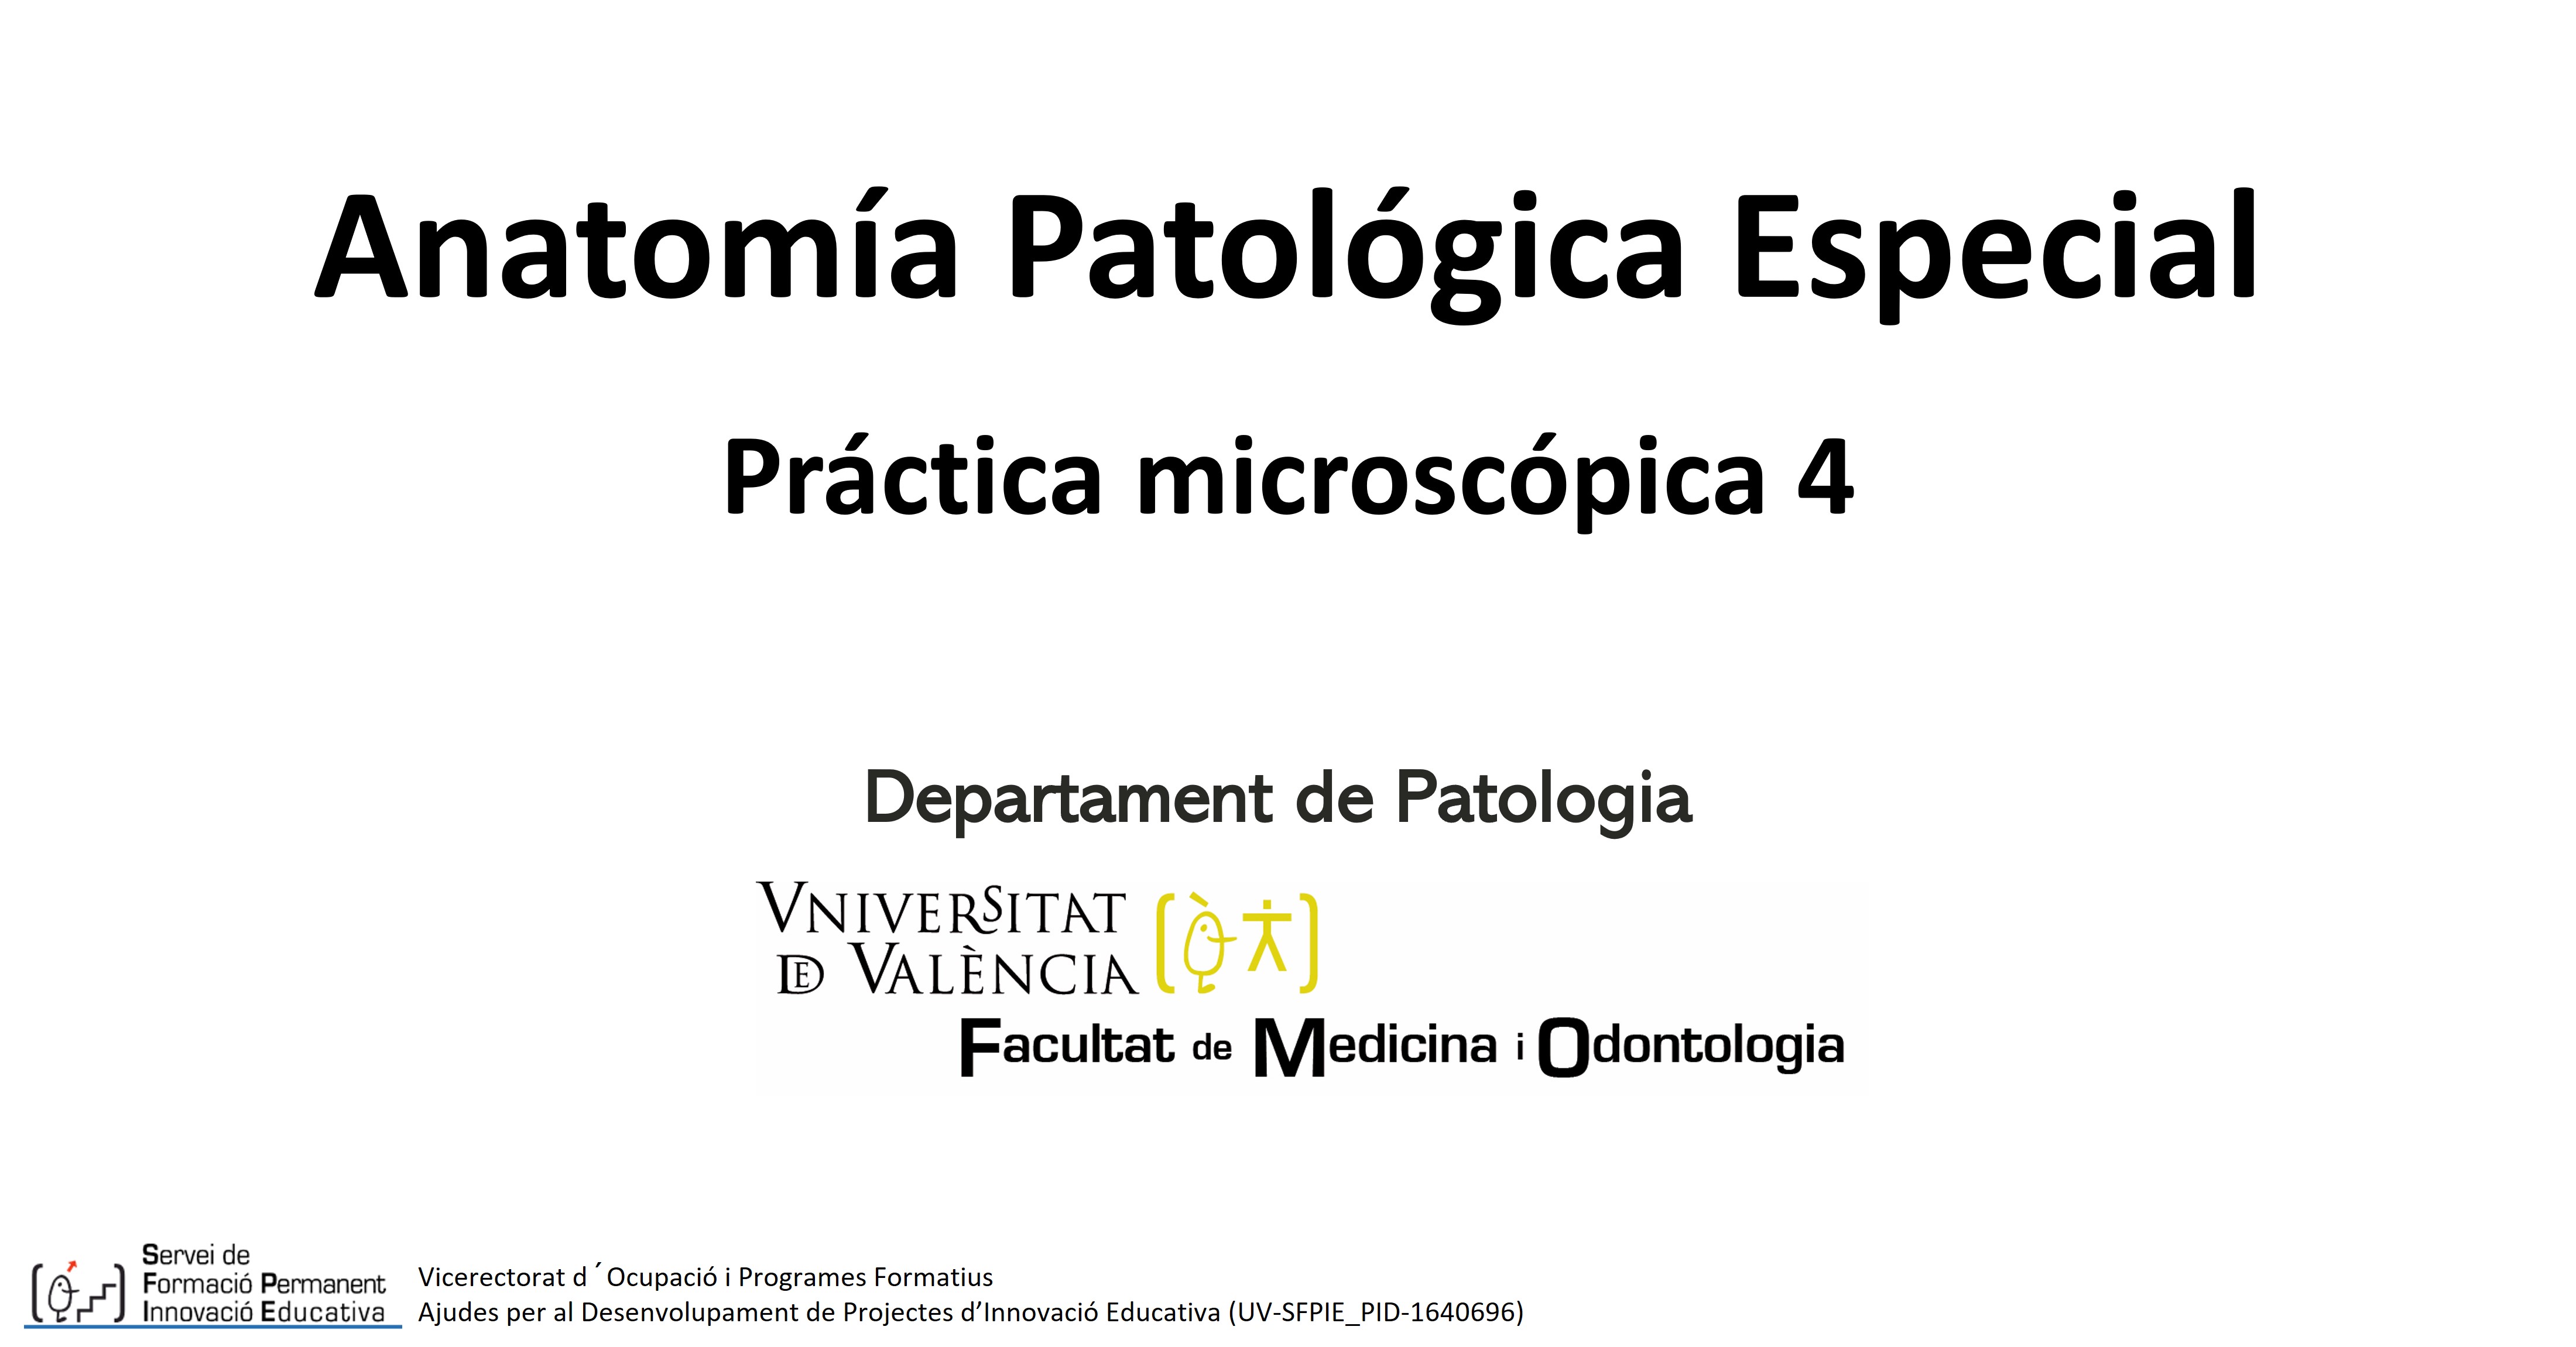 Anatomía Patológica Especial - Práctica microscópica 4